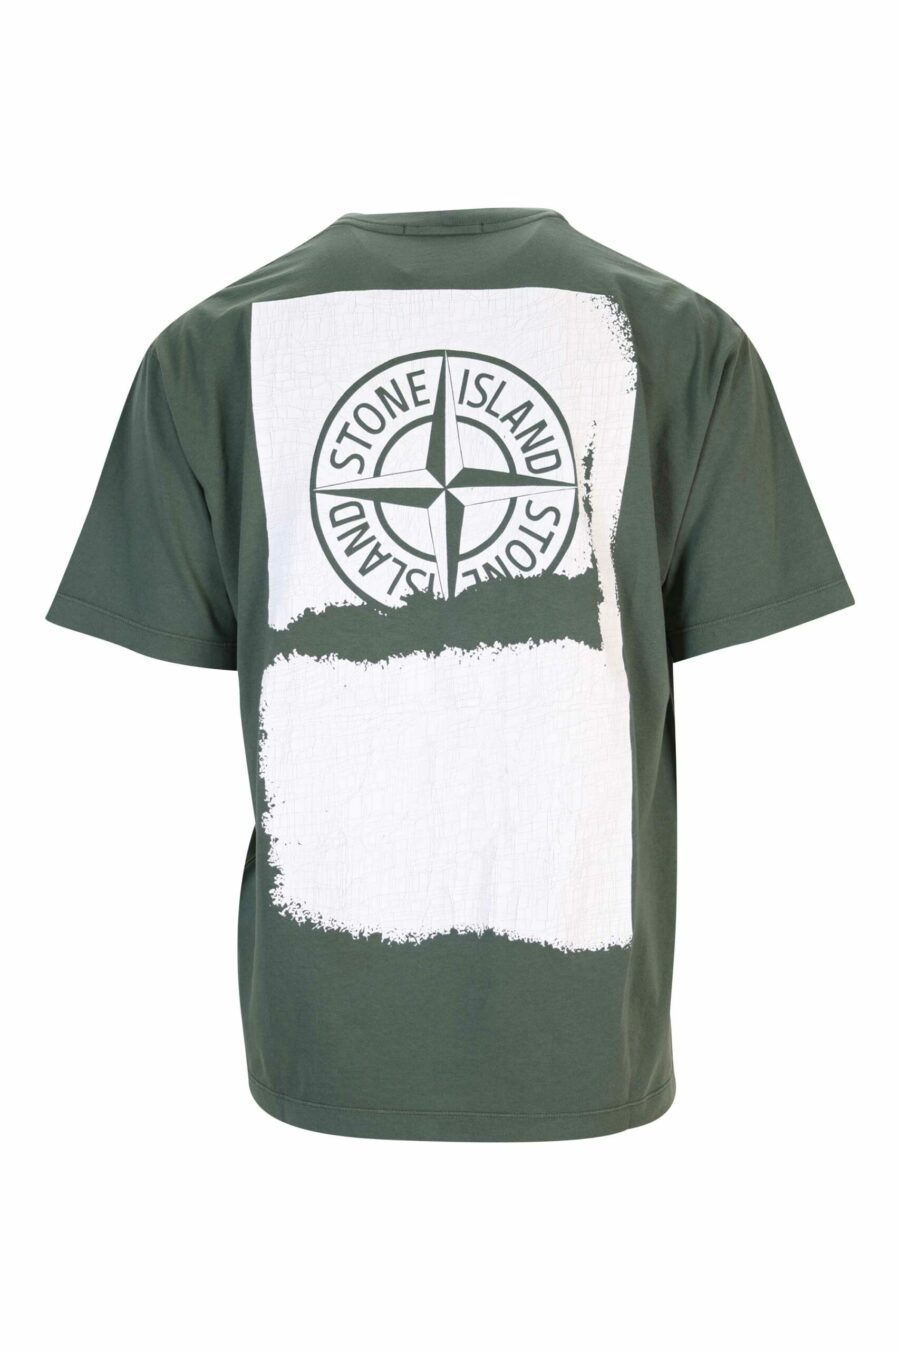 T-shirt vert militaire avec minilogue centré blanc - 8052572928543 échelle 1